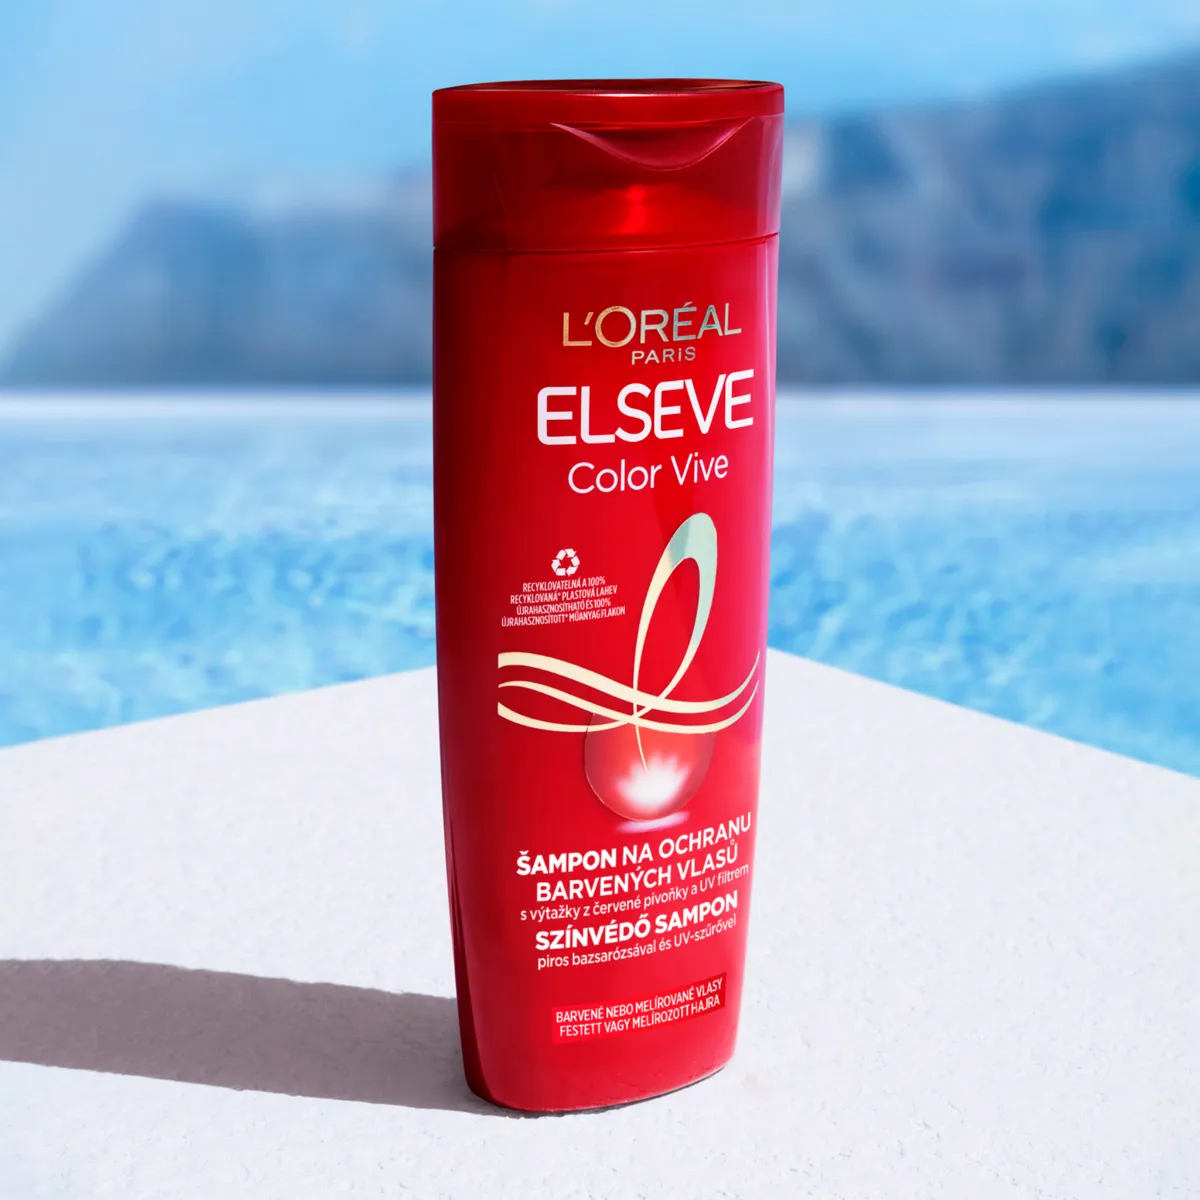 L'Oréal Paris Elseve Color Vive šampón pre farbené vlasy 1×700 ml, predlžuje farbu vlasov